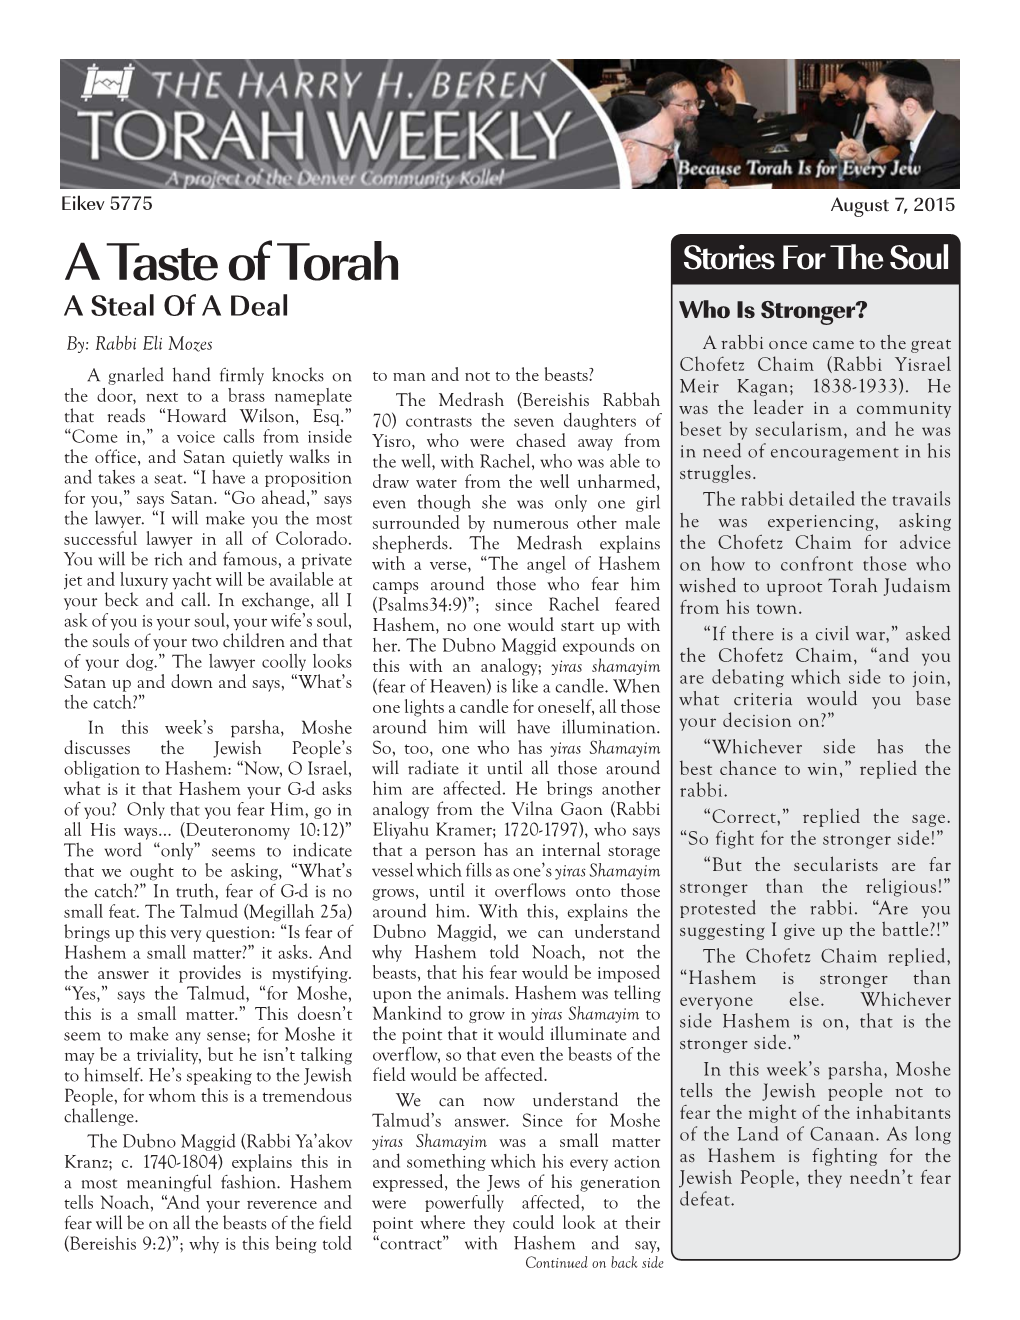 A Taste of Torah